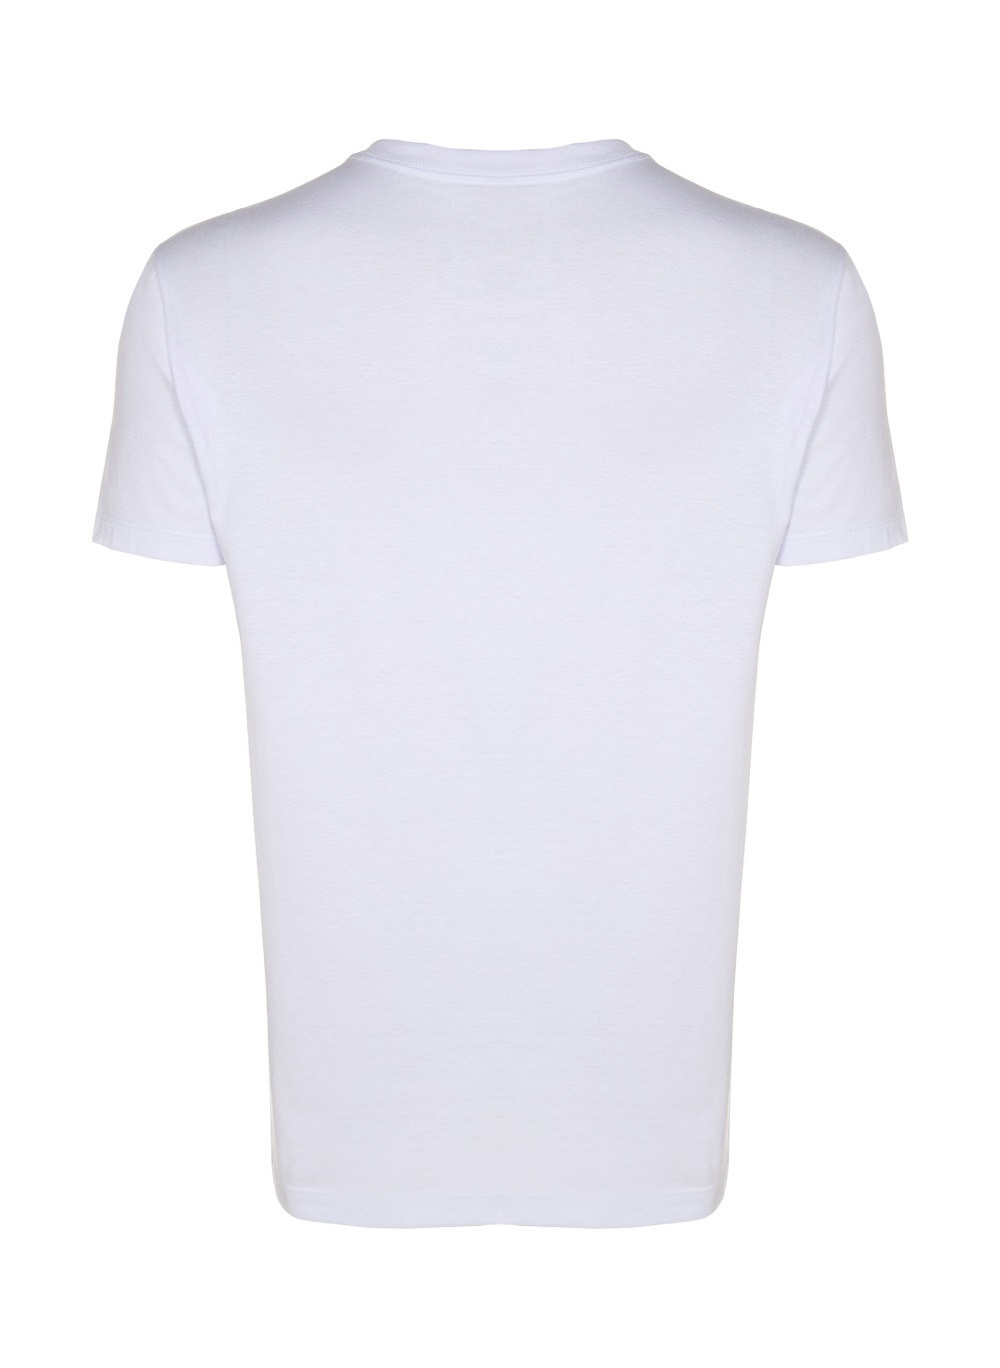 Kit Camiseta John John Basic Malha PB Masculino 41.54.0215 - Kit